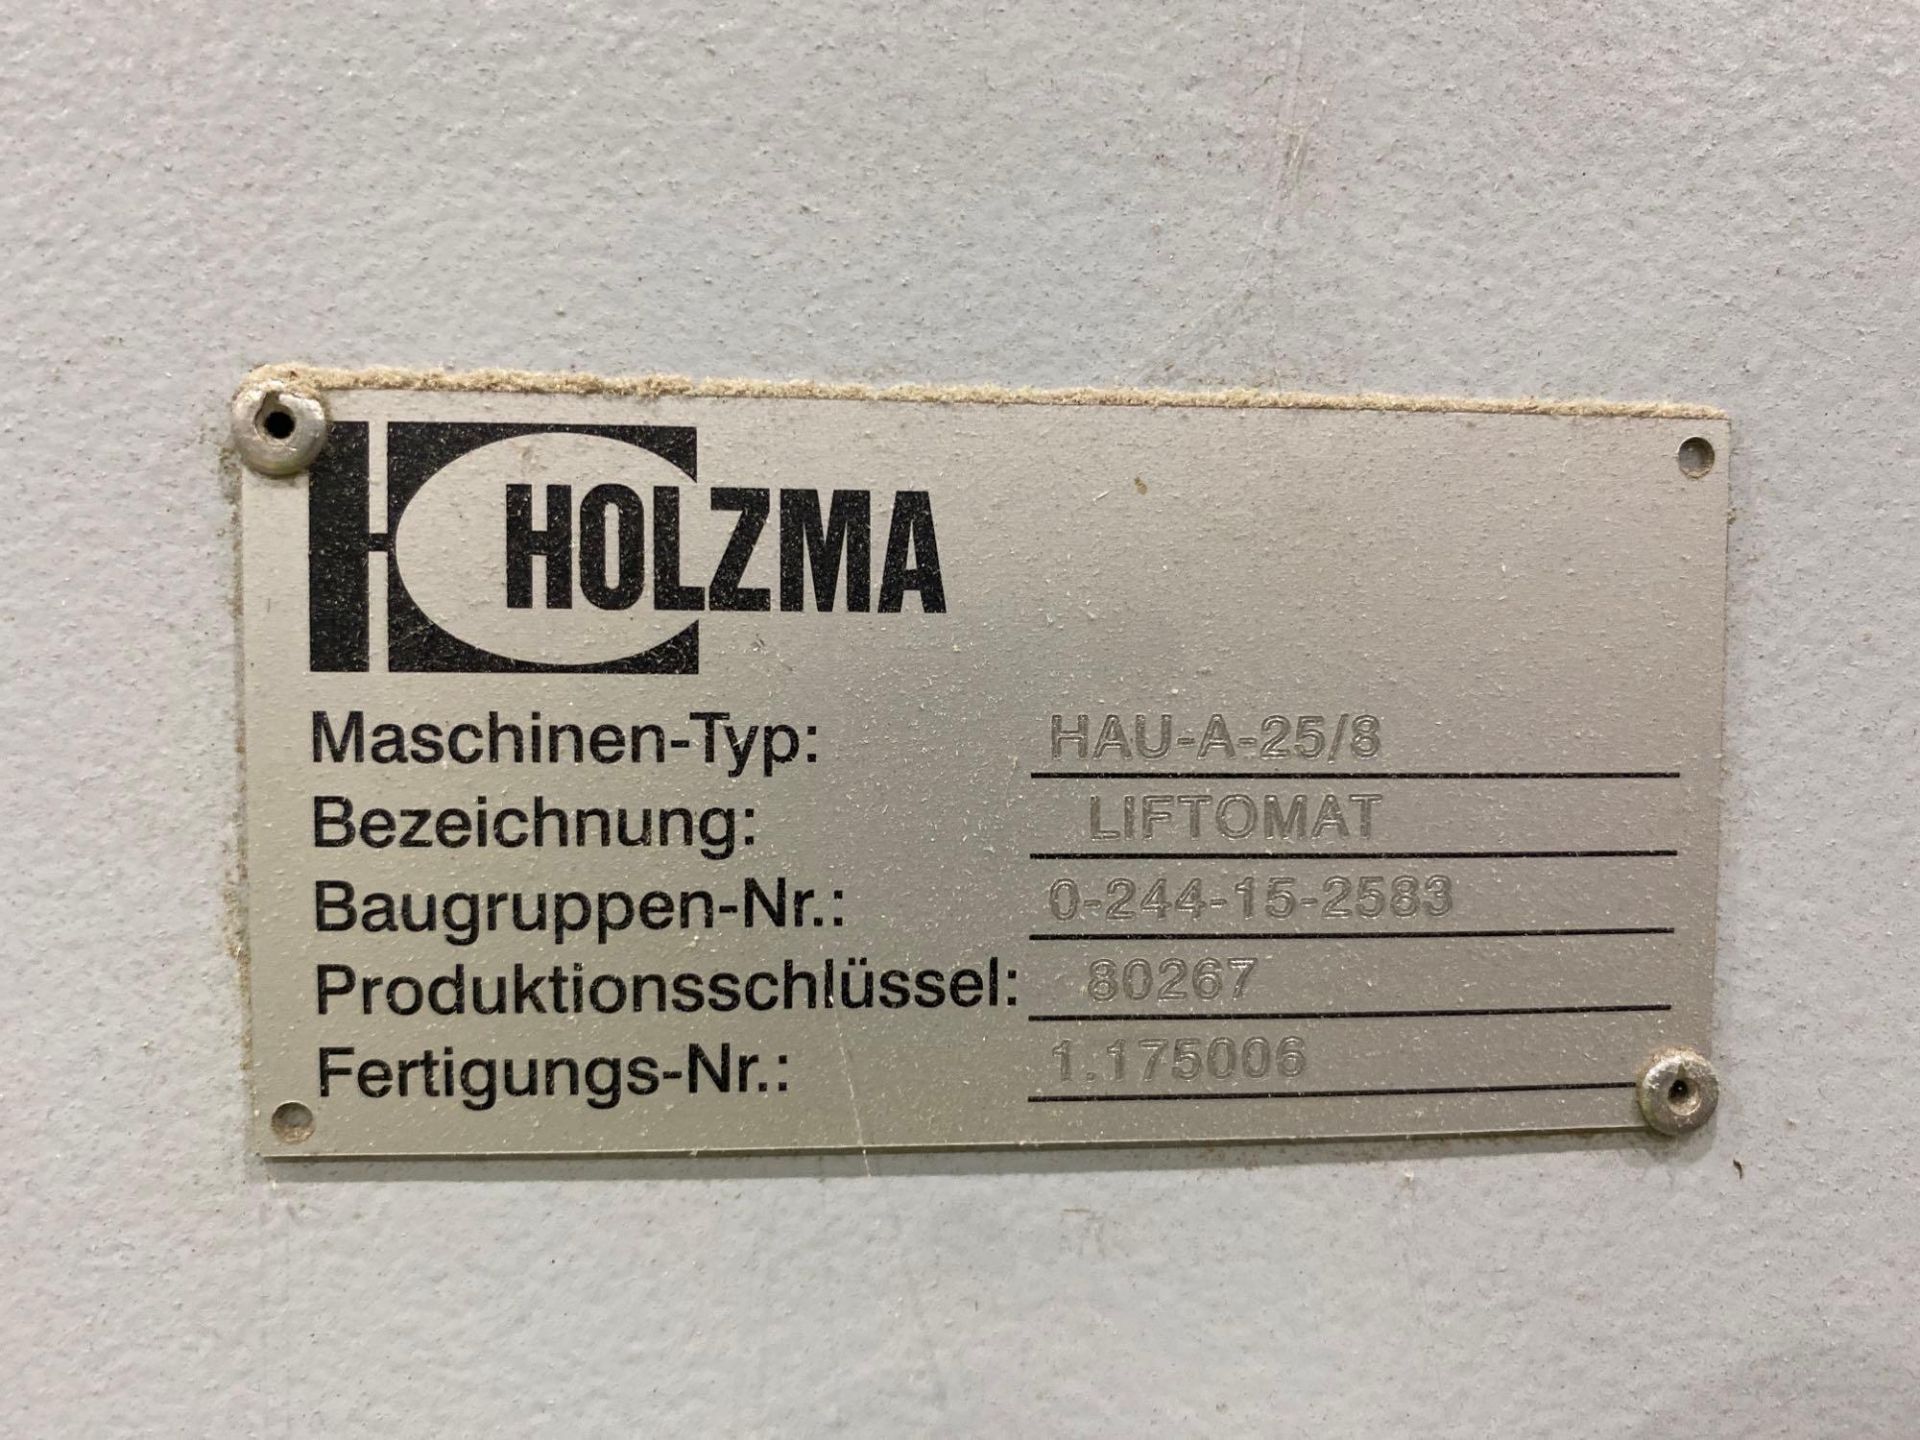 Lot Holzma liftomat HAU-A-25/8 - Image 9 of 14